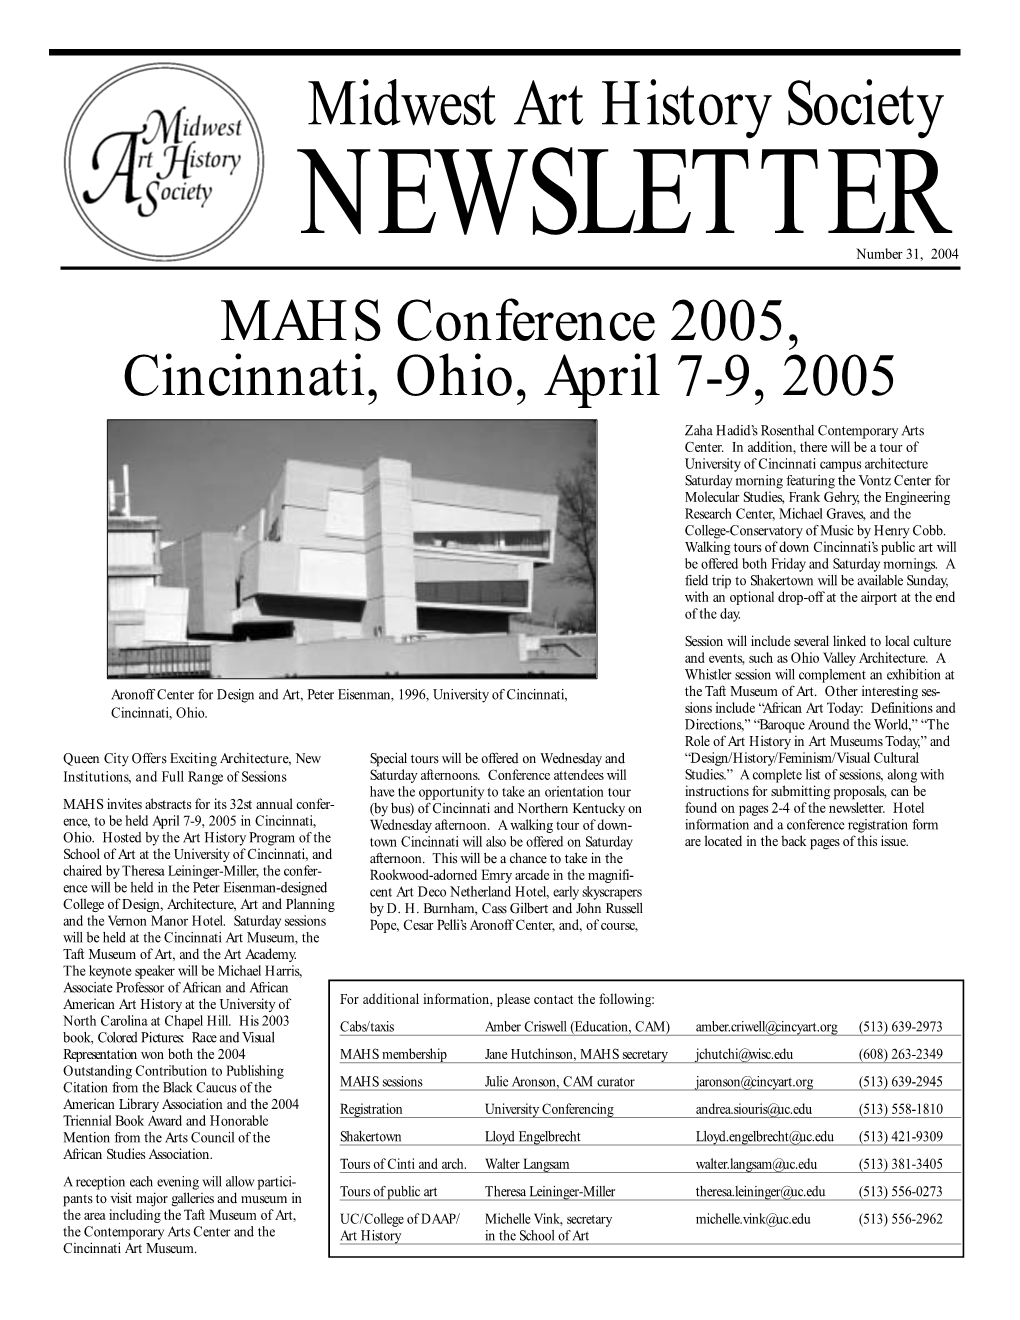 MAHS-009/Fall 2004